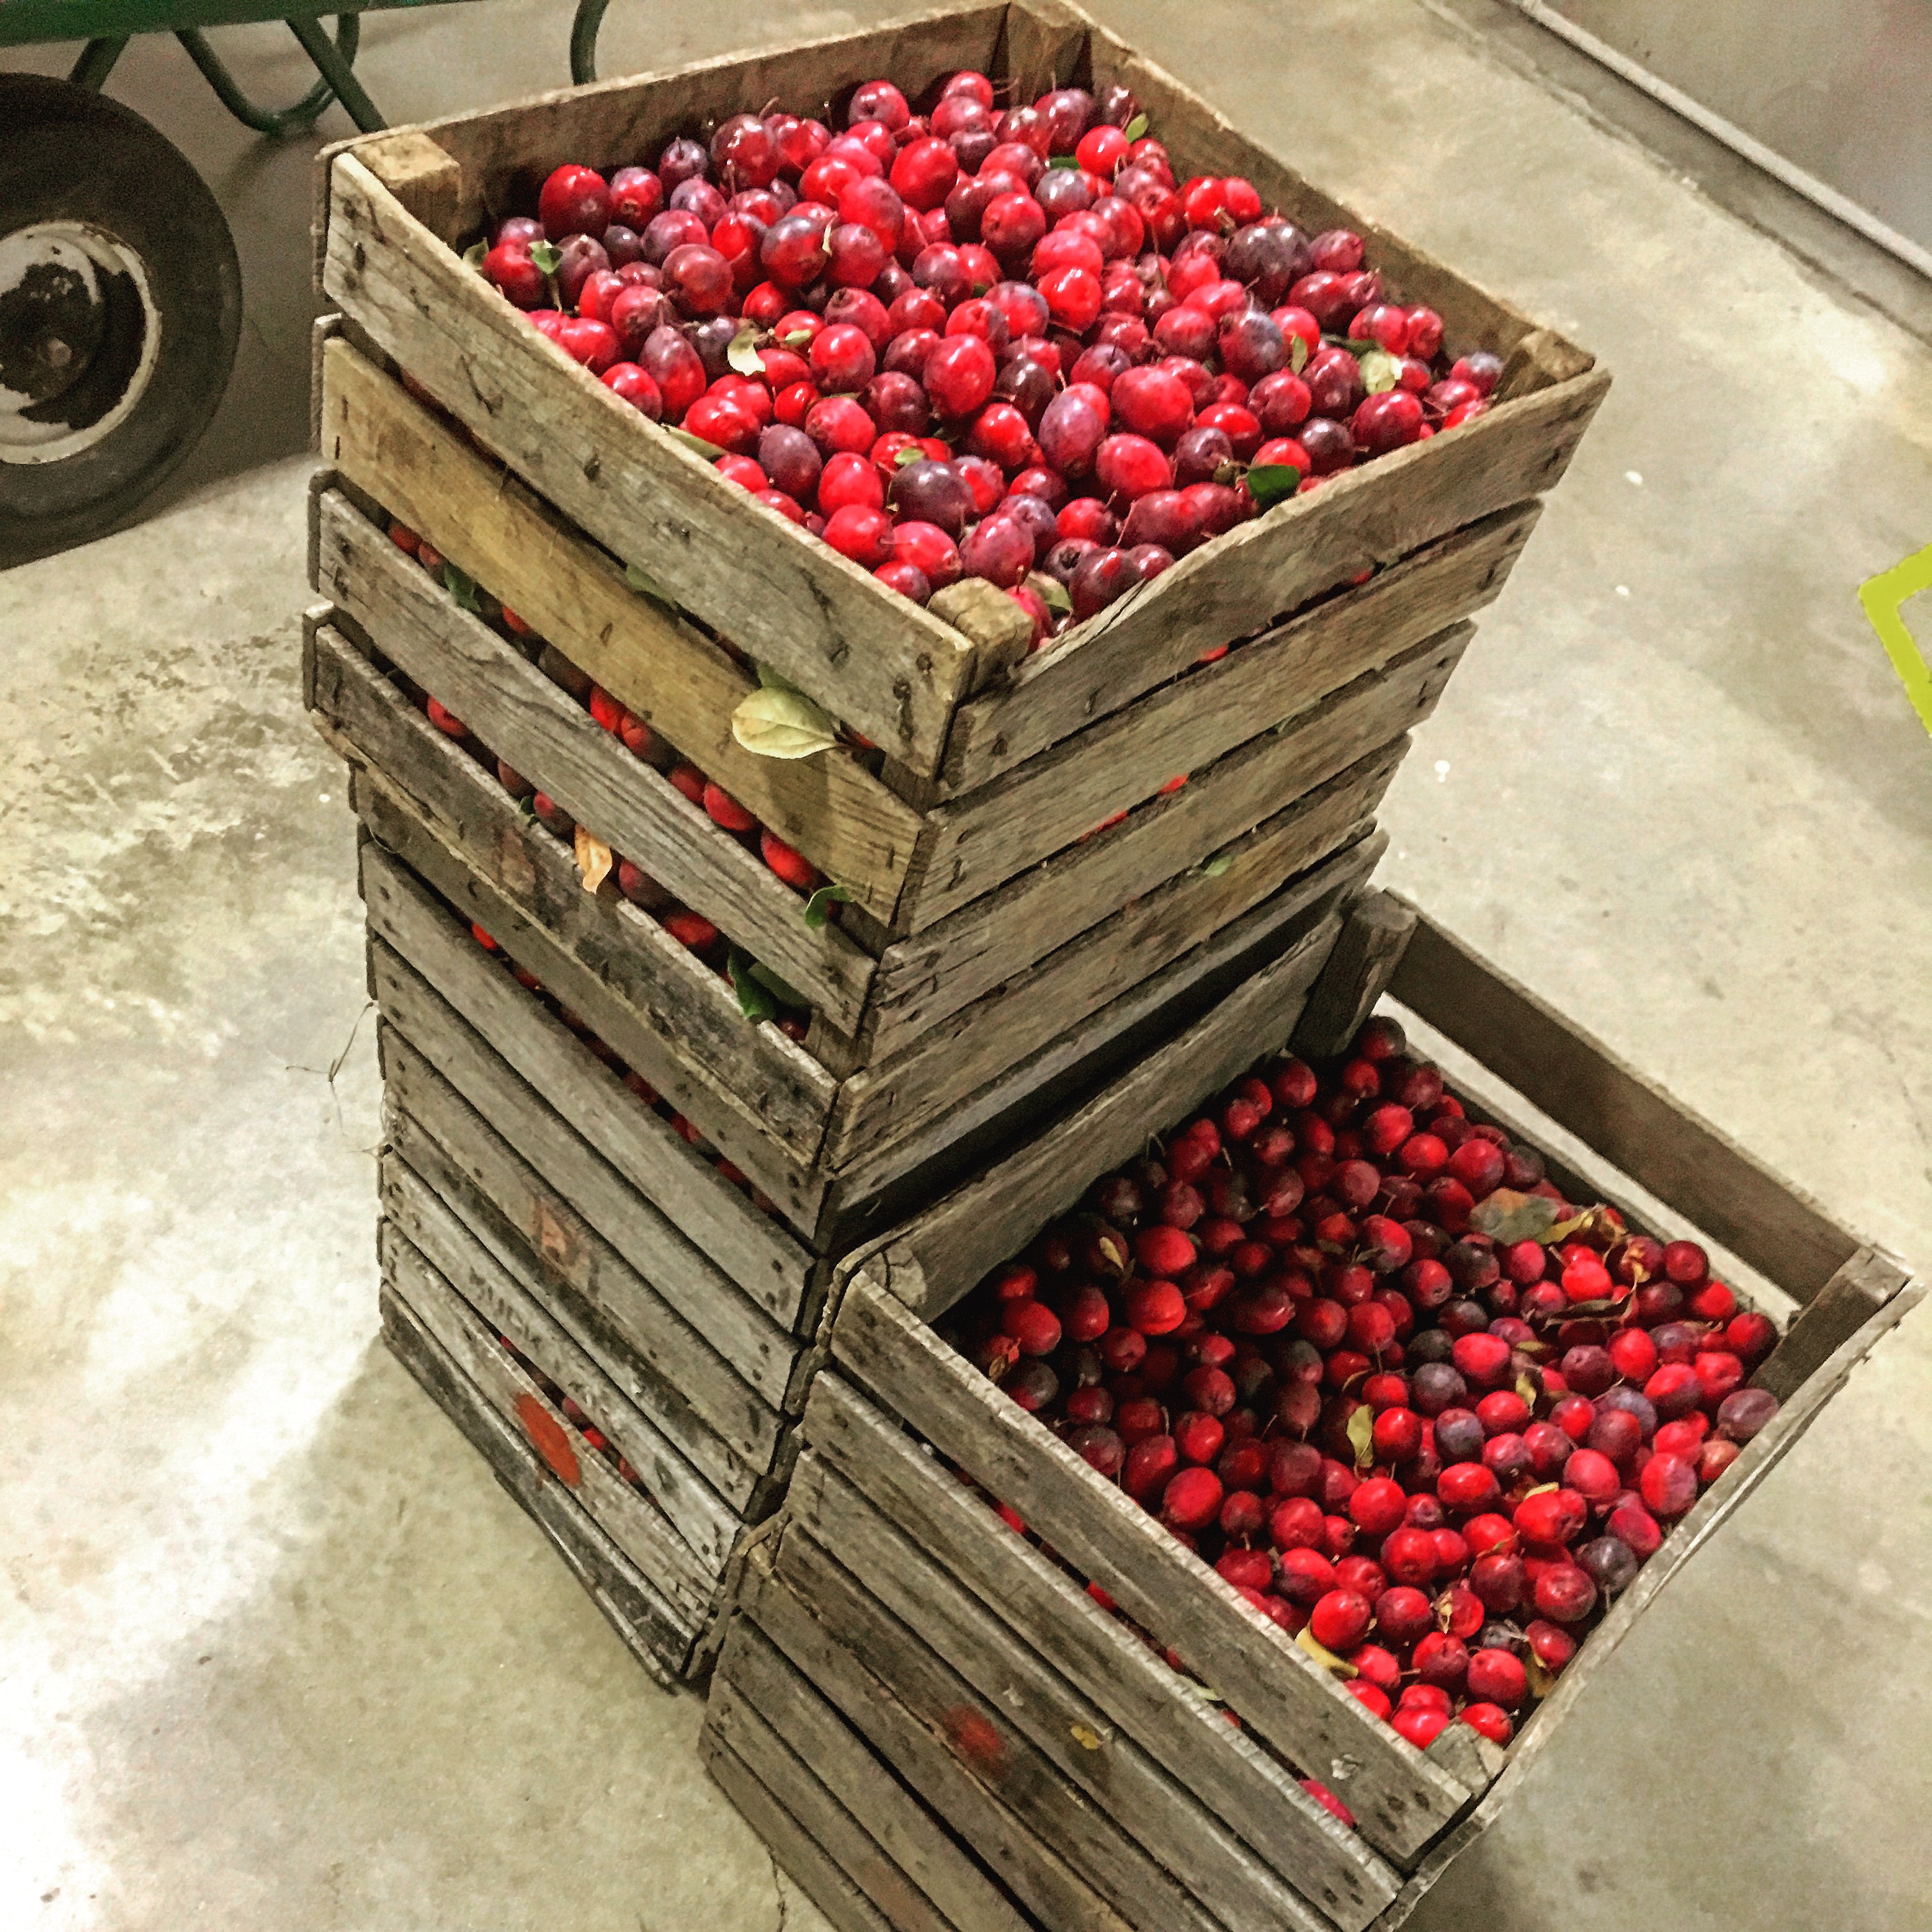 Cranberry in bushel boxes